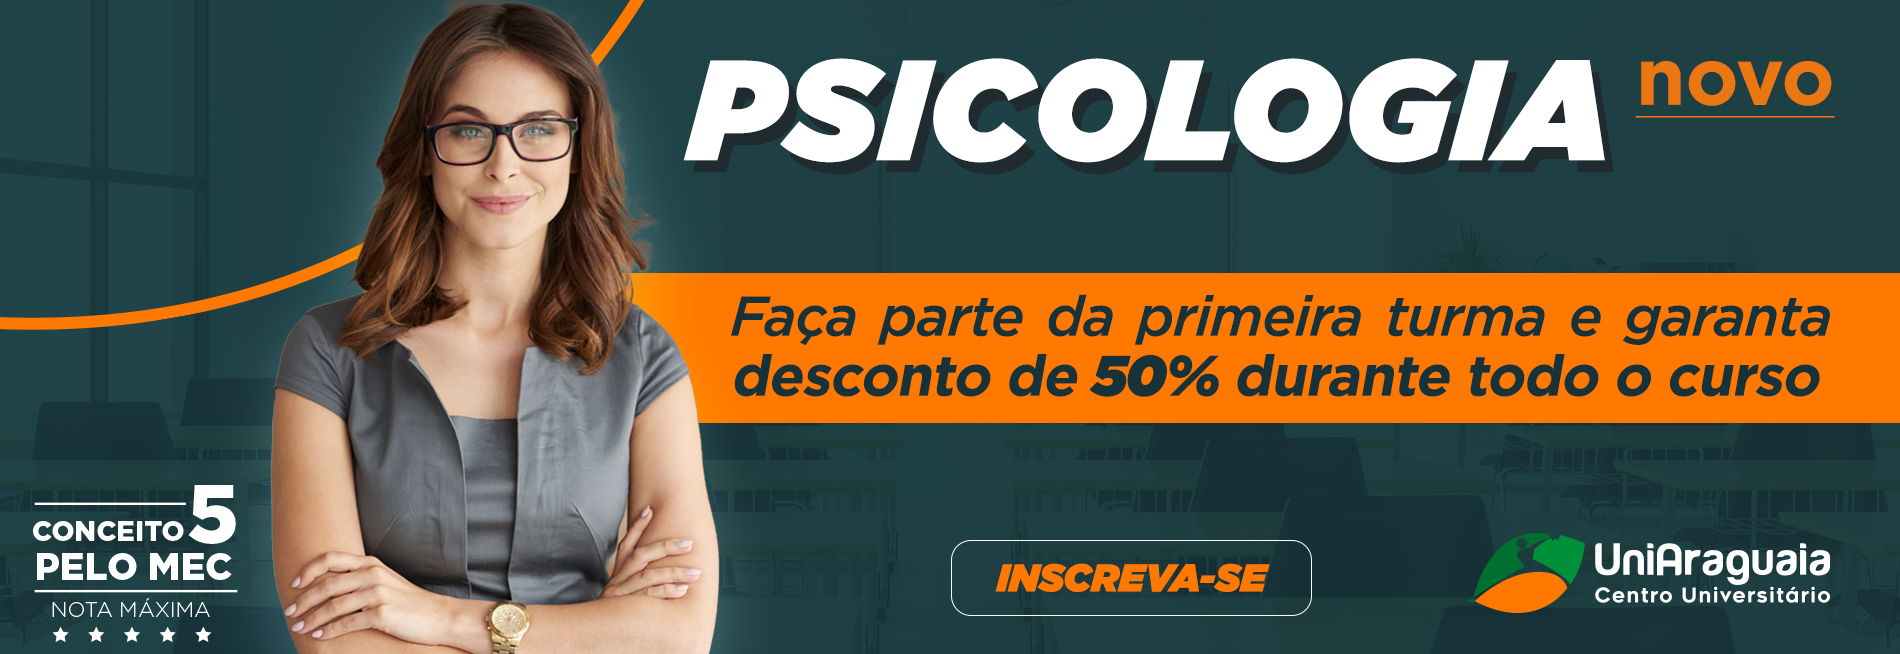 UNIARAGUAIA - GRADUAÇÃO - Psicologia - 50% desconto